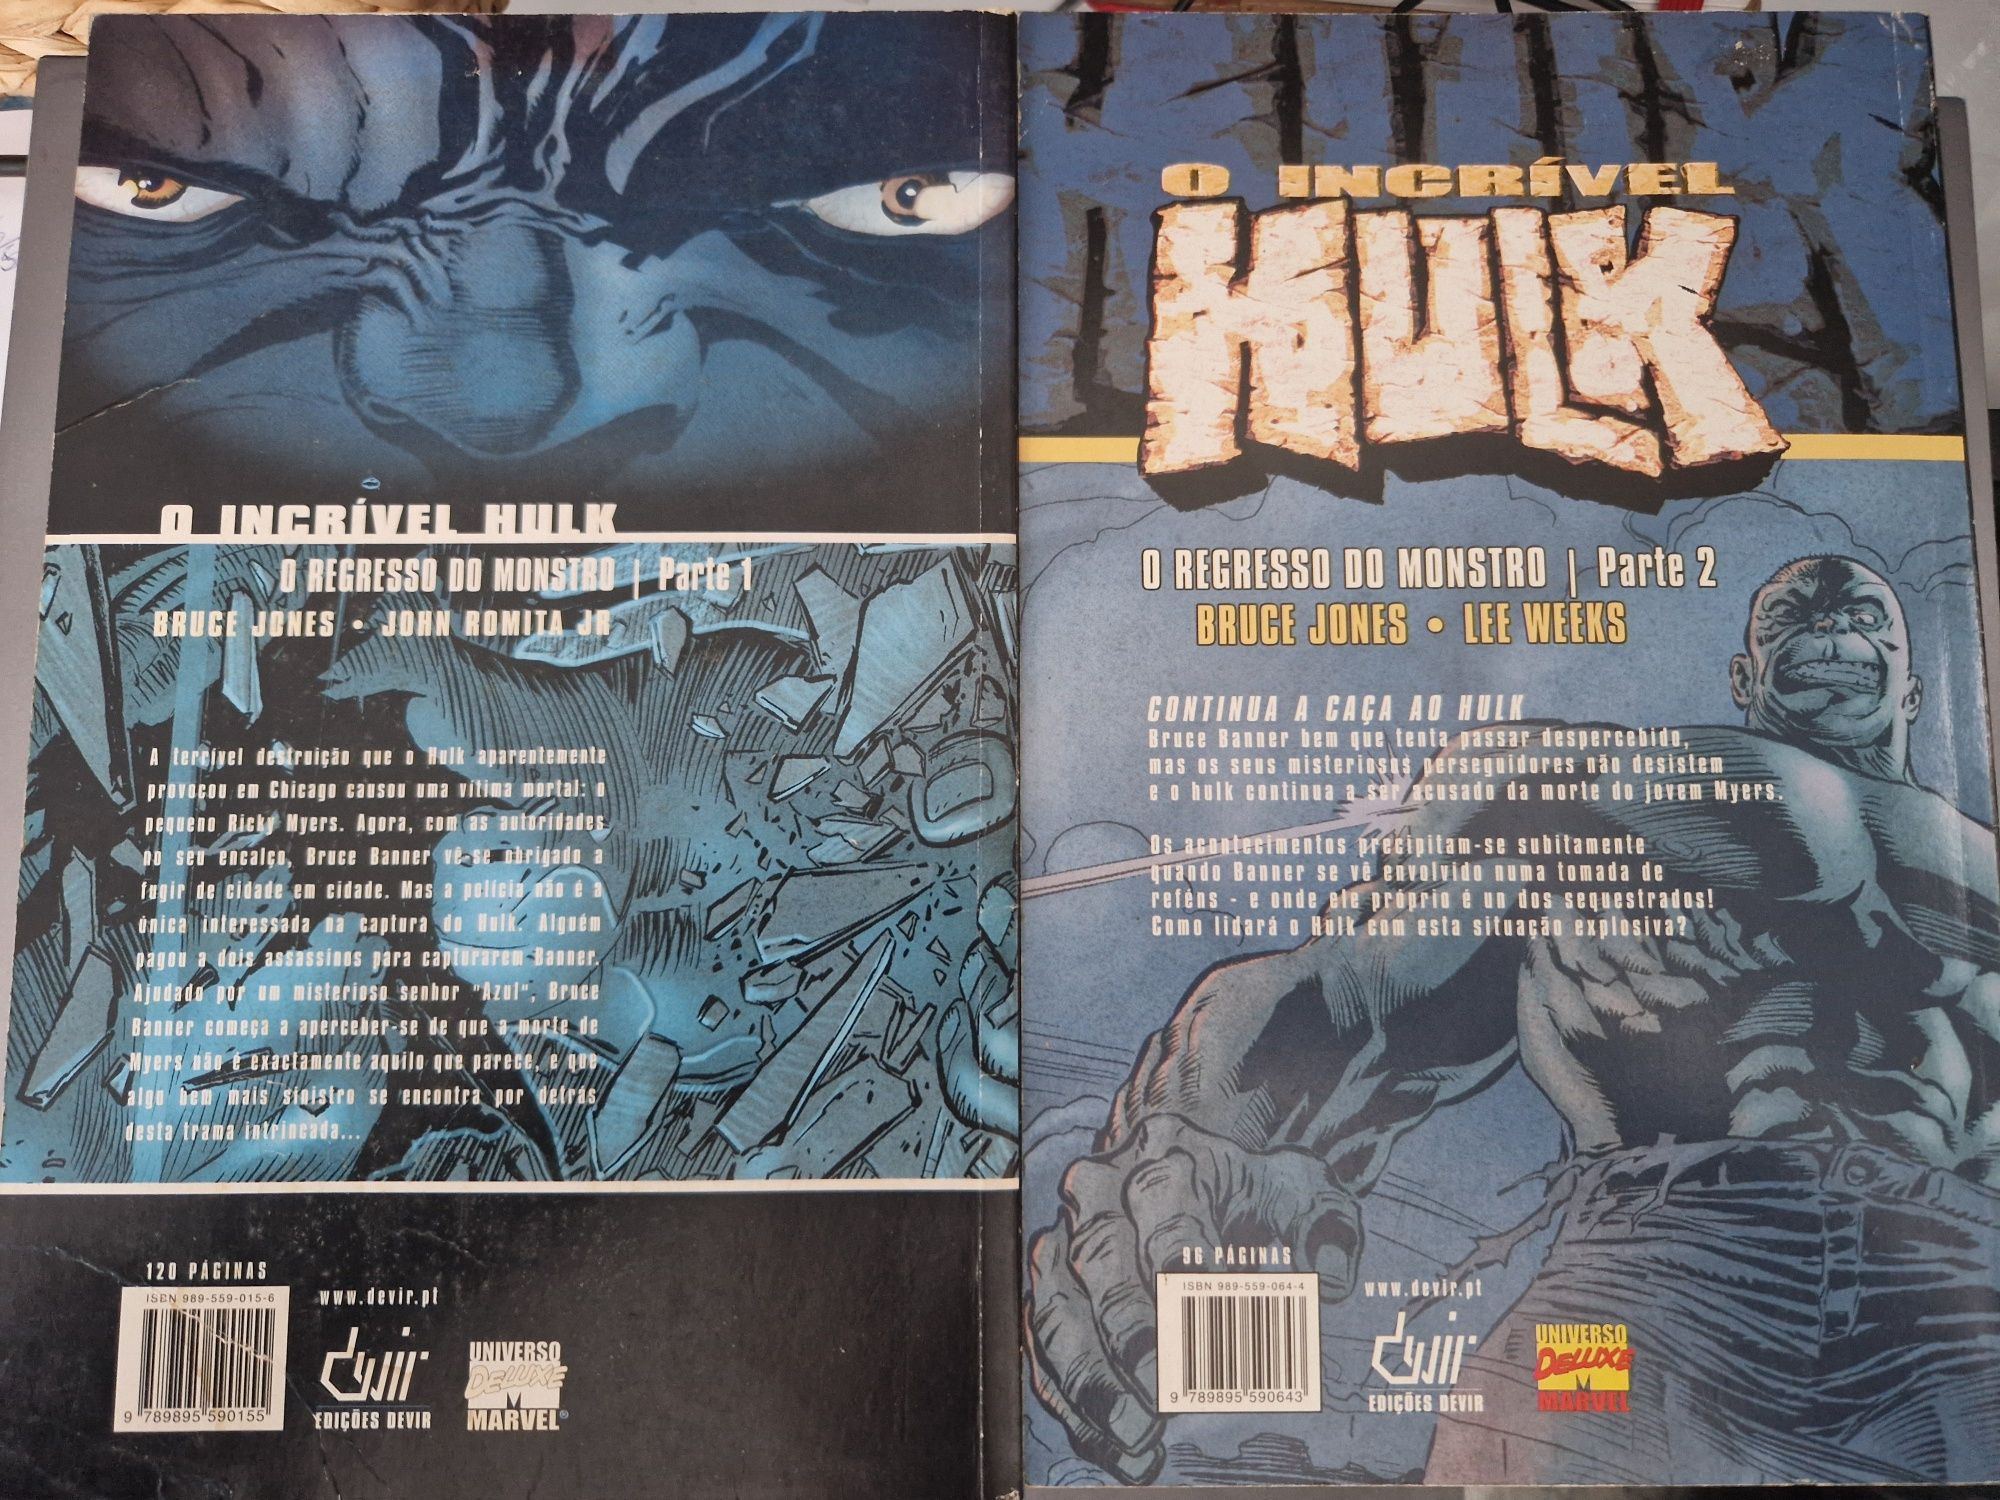 Hulk O regresso do monstro vol.1 e 2